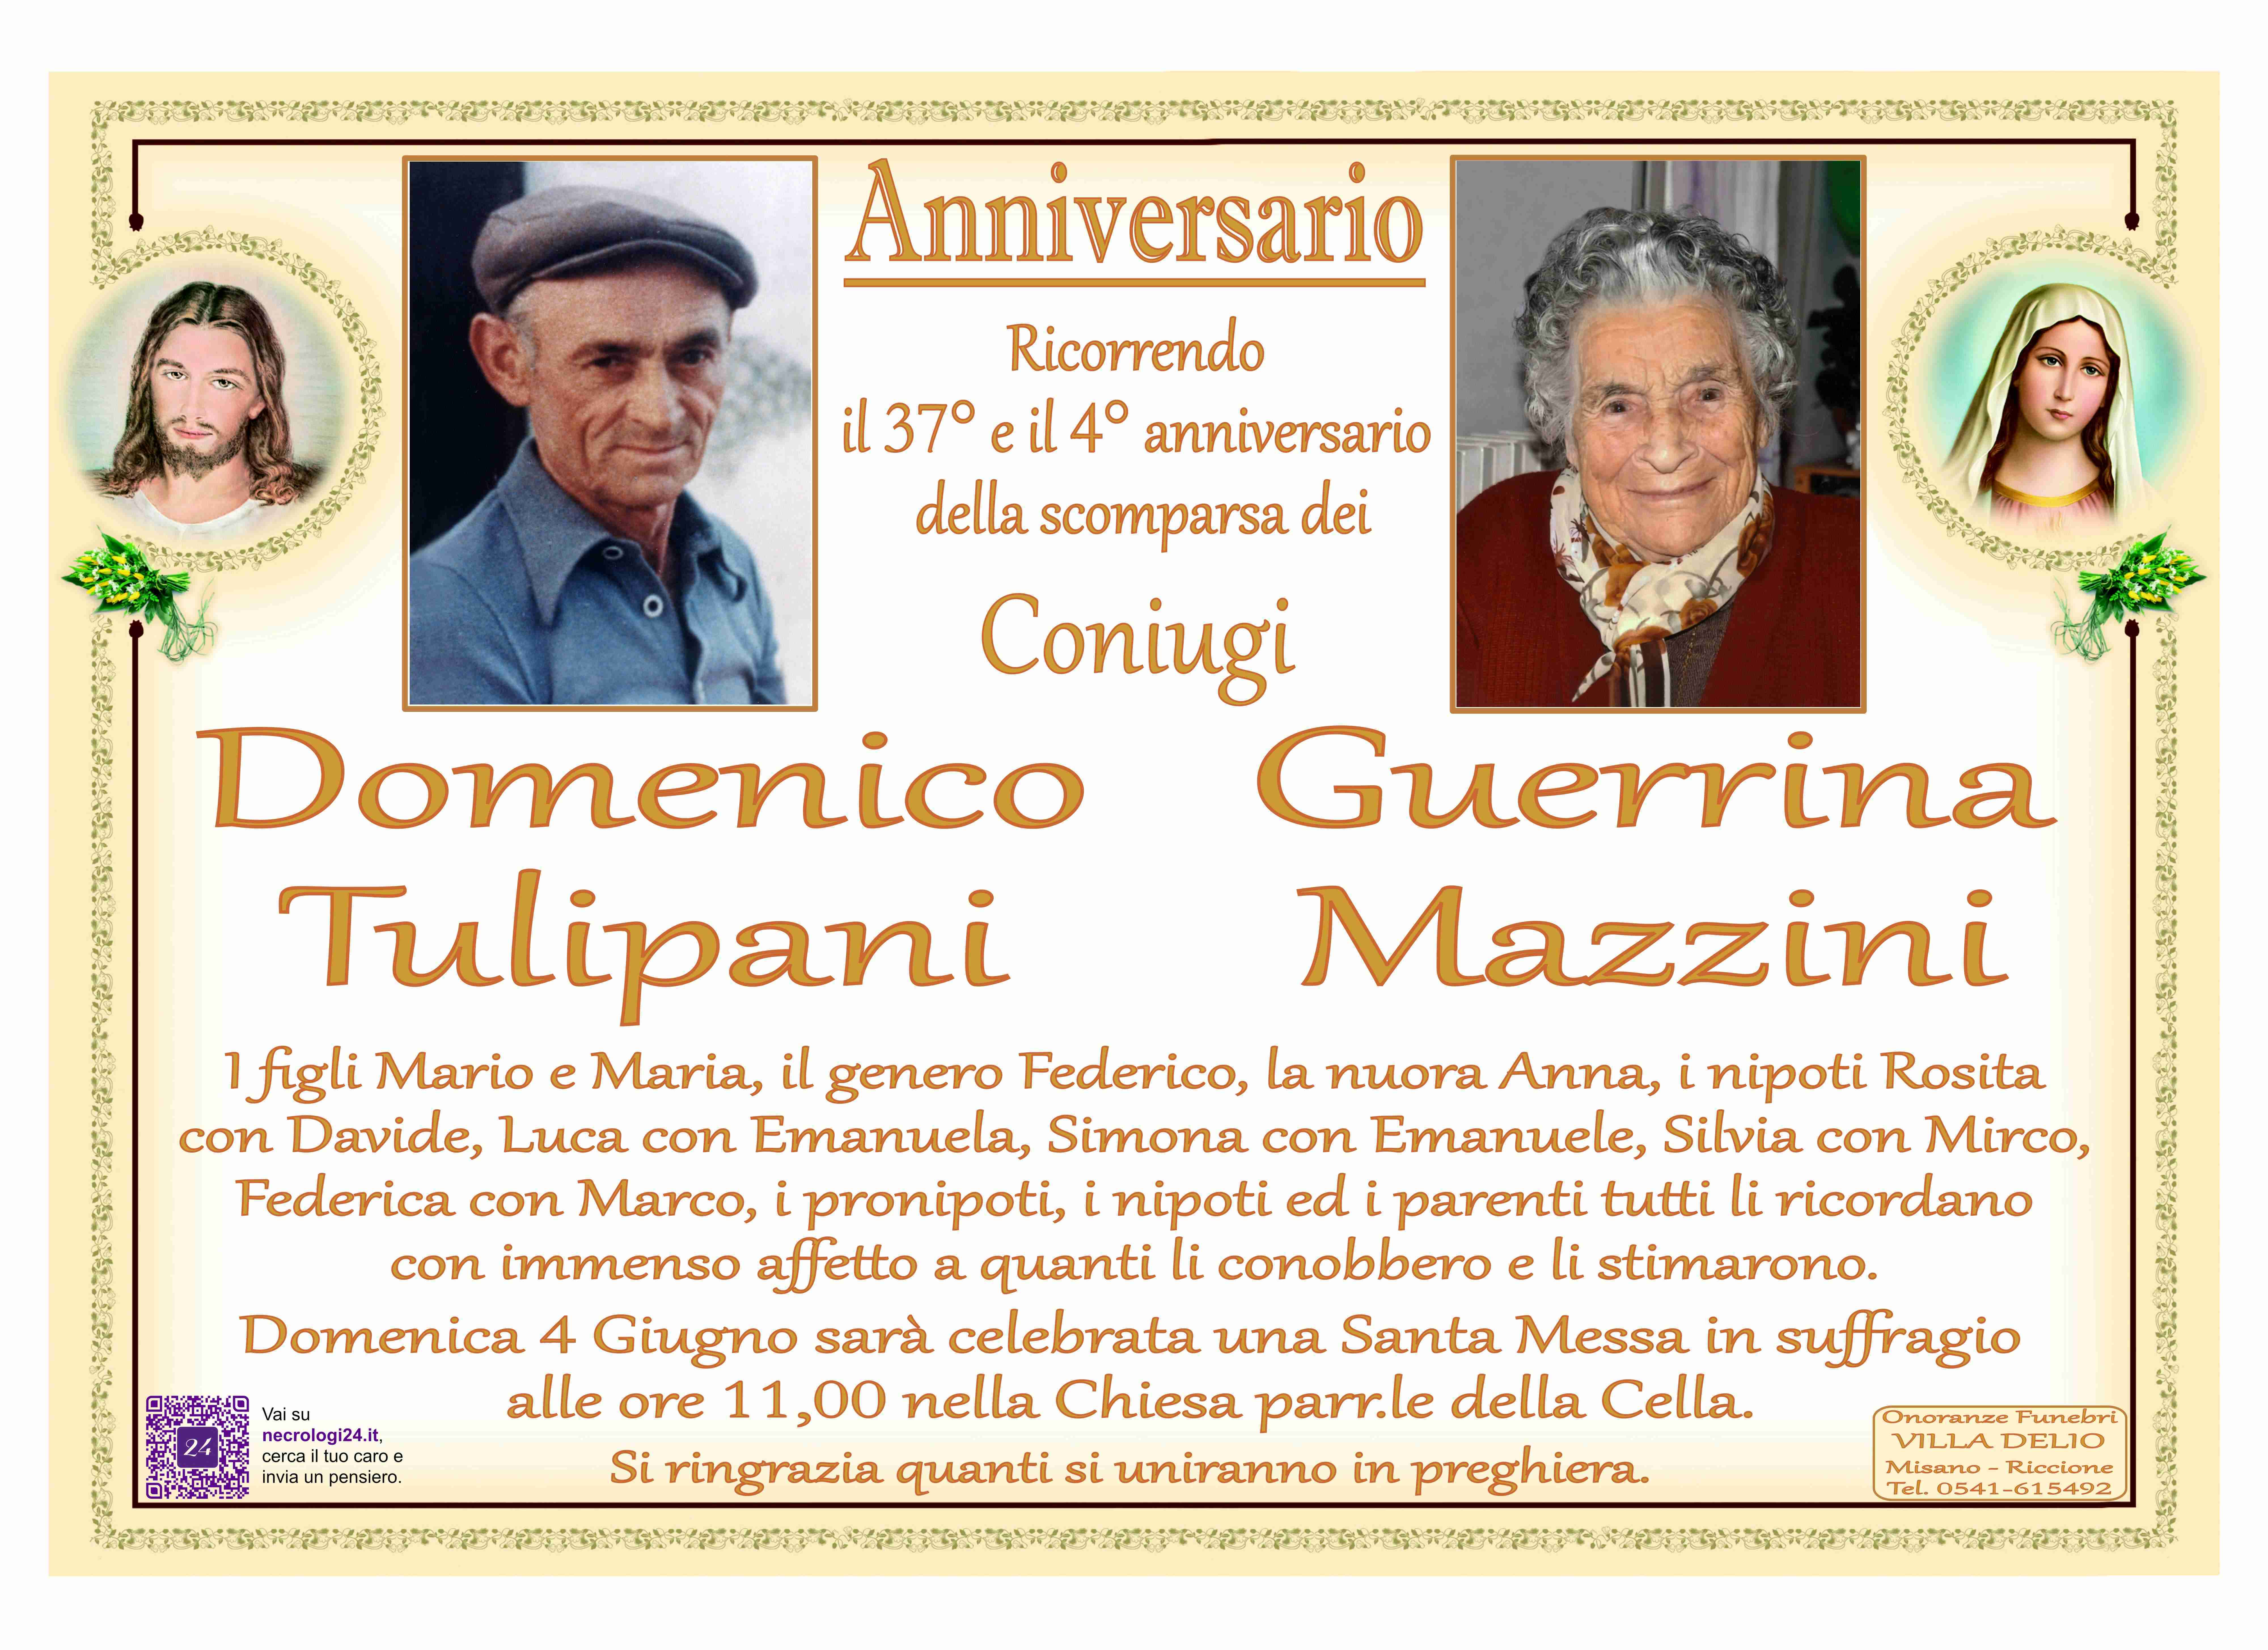 Domenico Tulipani e Guerrina Mazzini